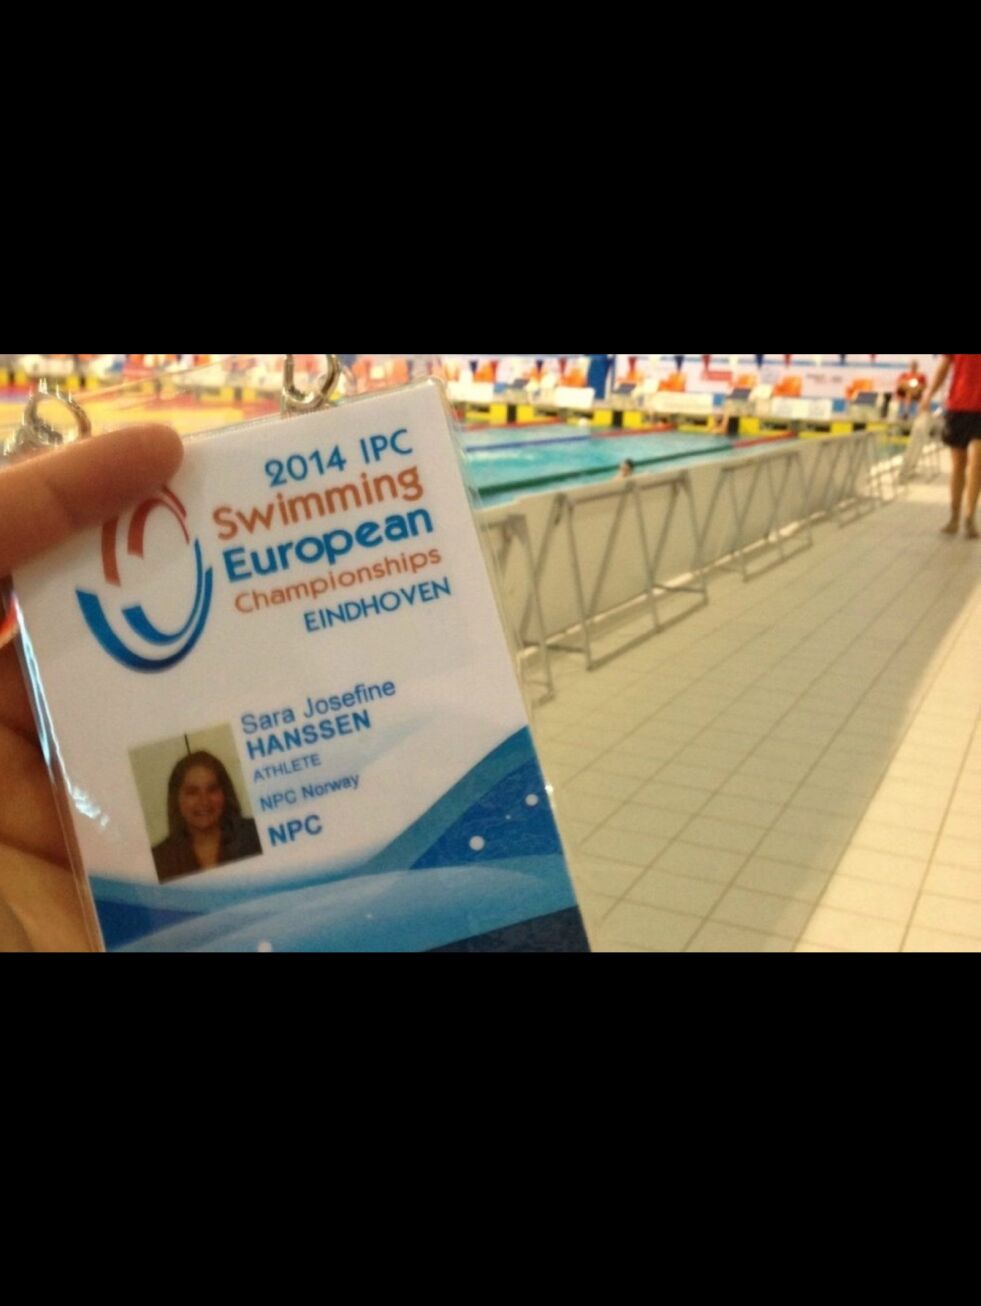 SARA FOR NORGE. Her er beviset på at Fauske svømmeklubb har en EM-deltaker. Begge foto: Sara Josefine Hanssen